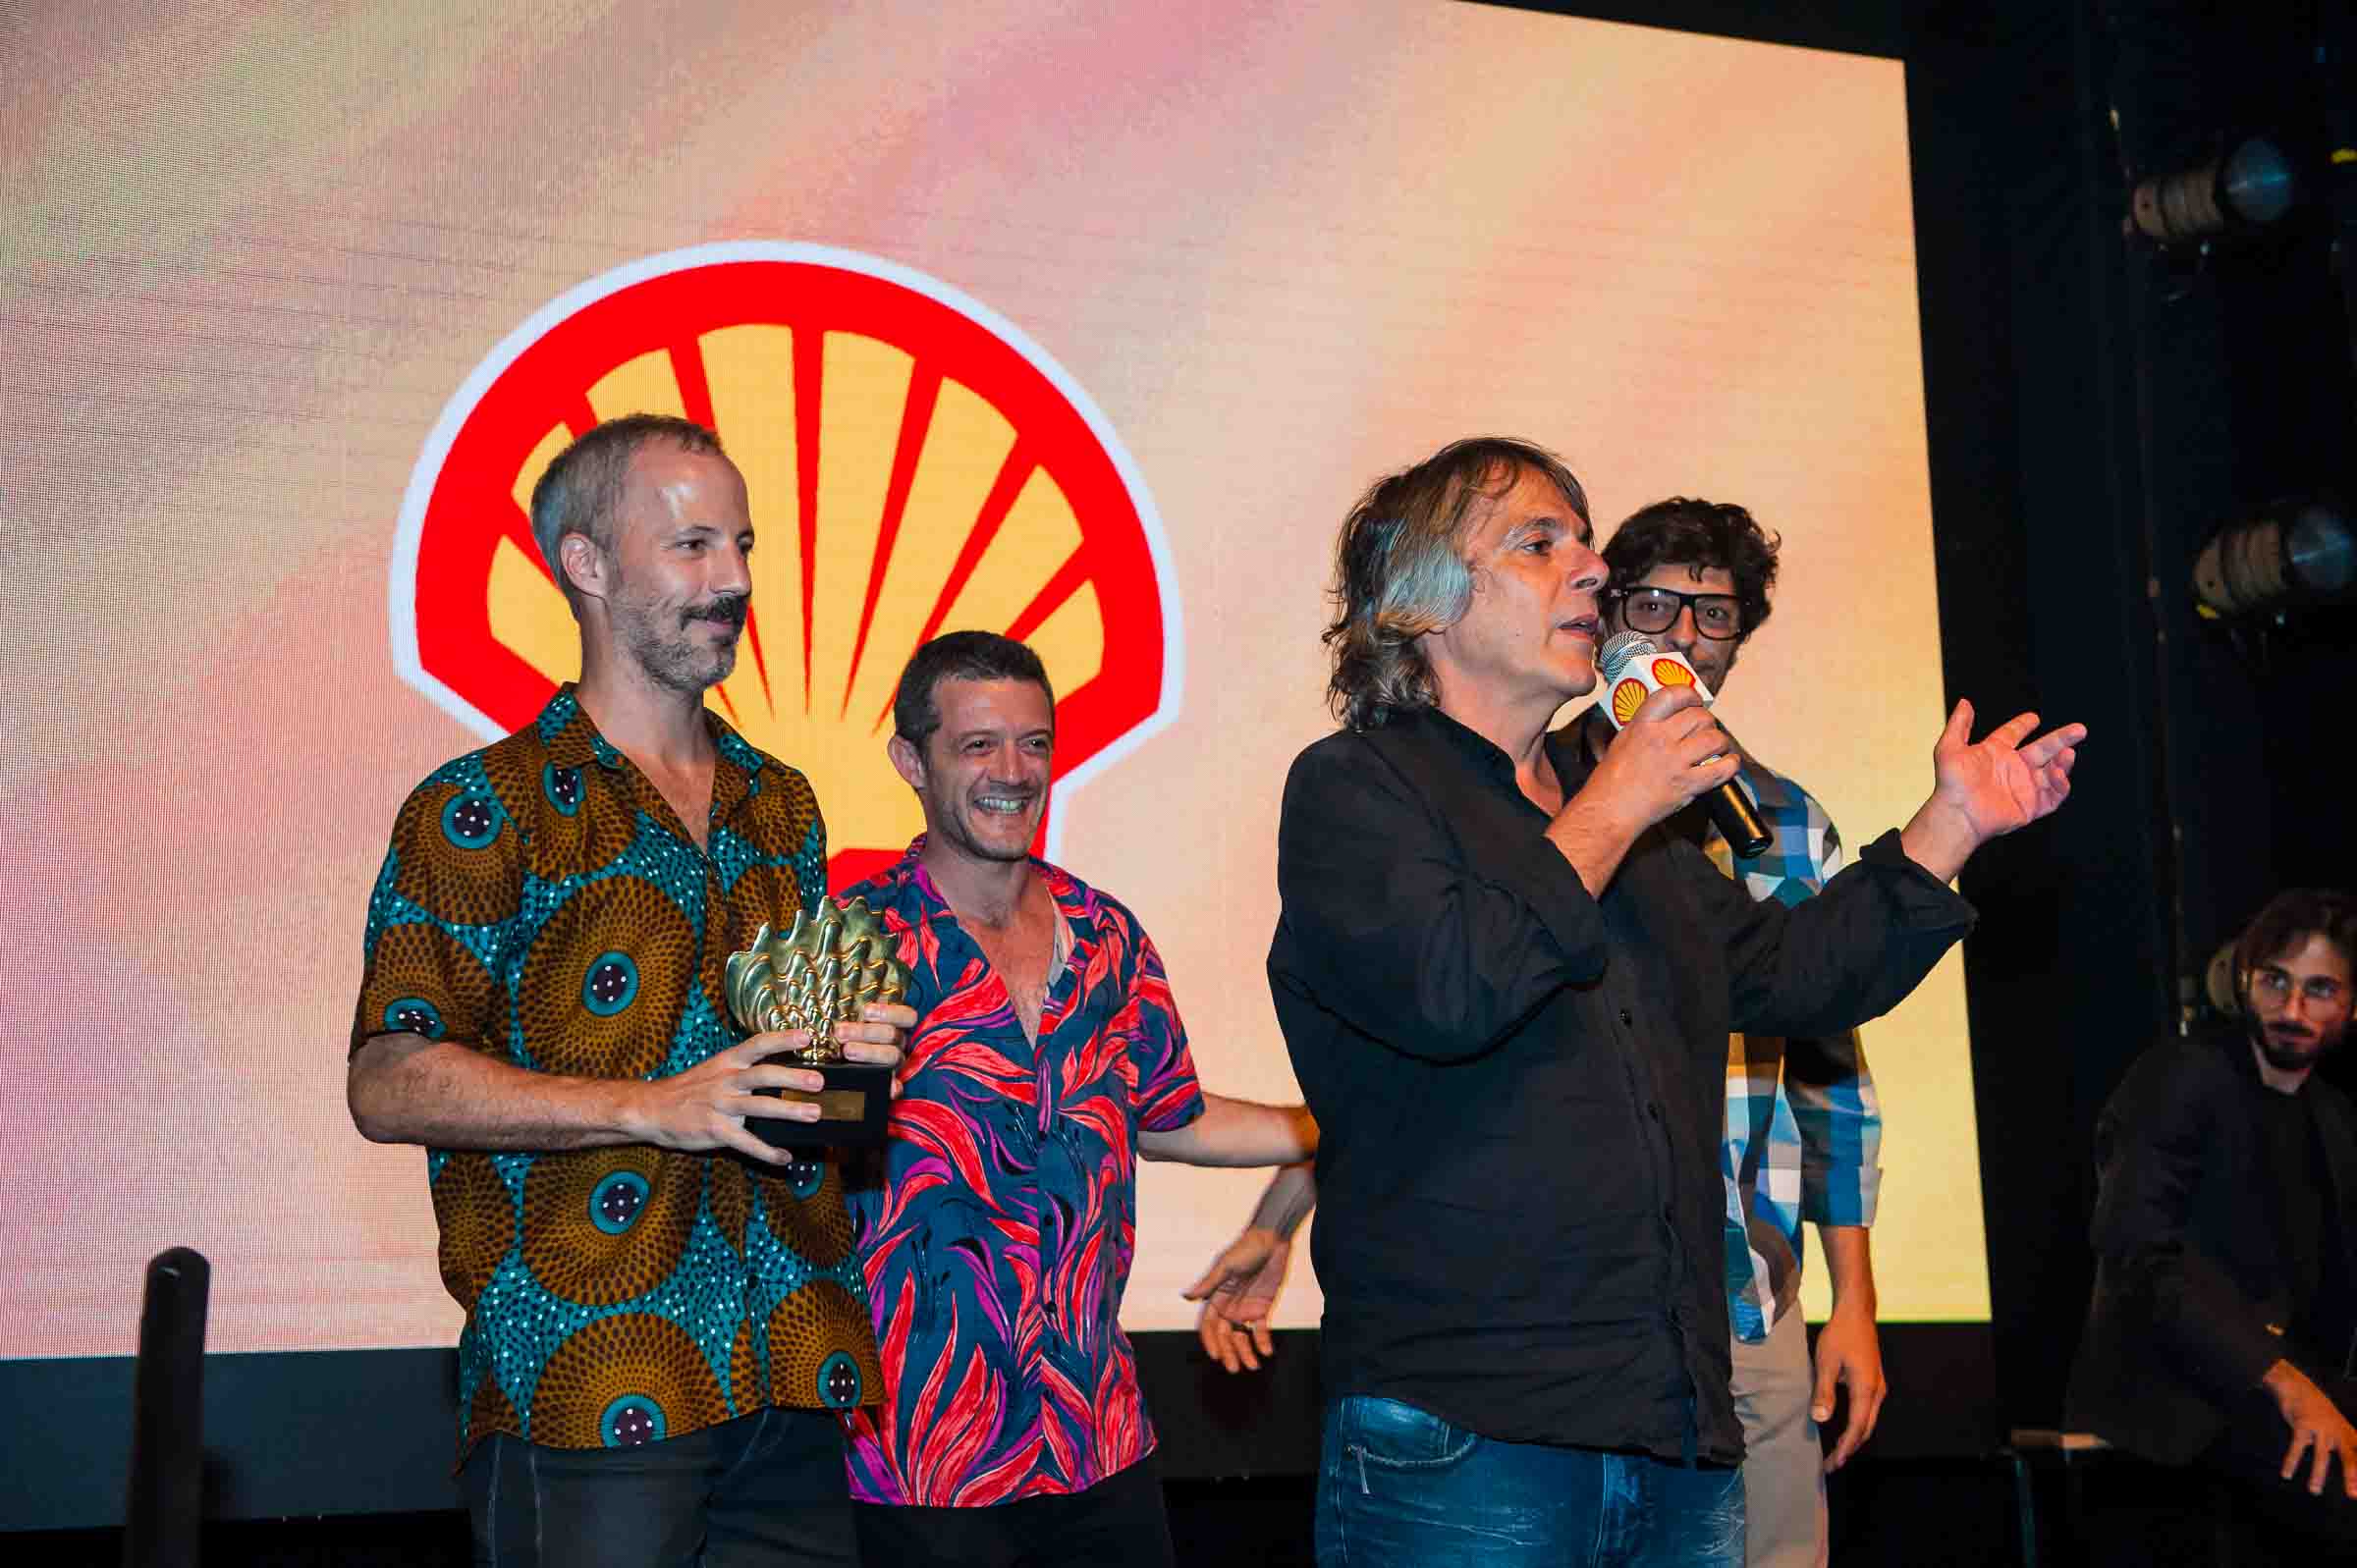 Jô Soares é homenageado no Prêmio Shell de Teatro